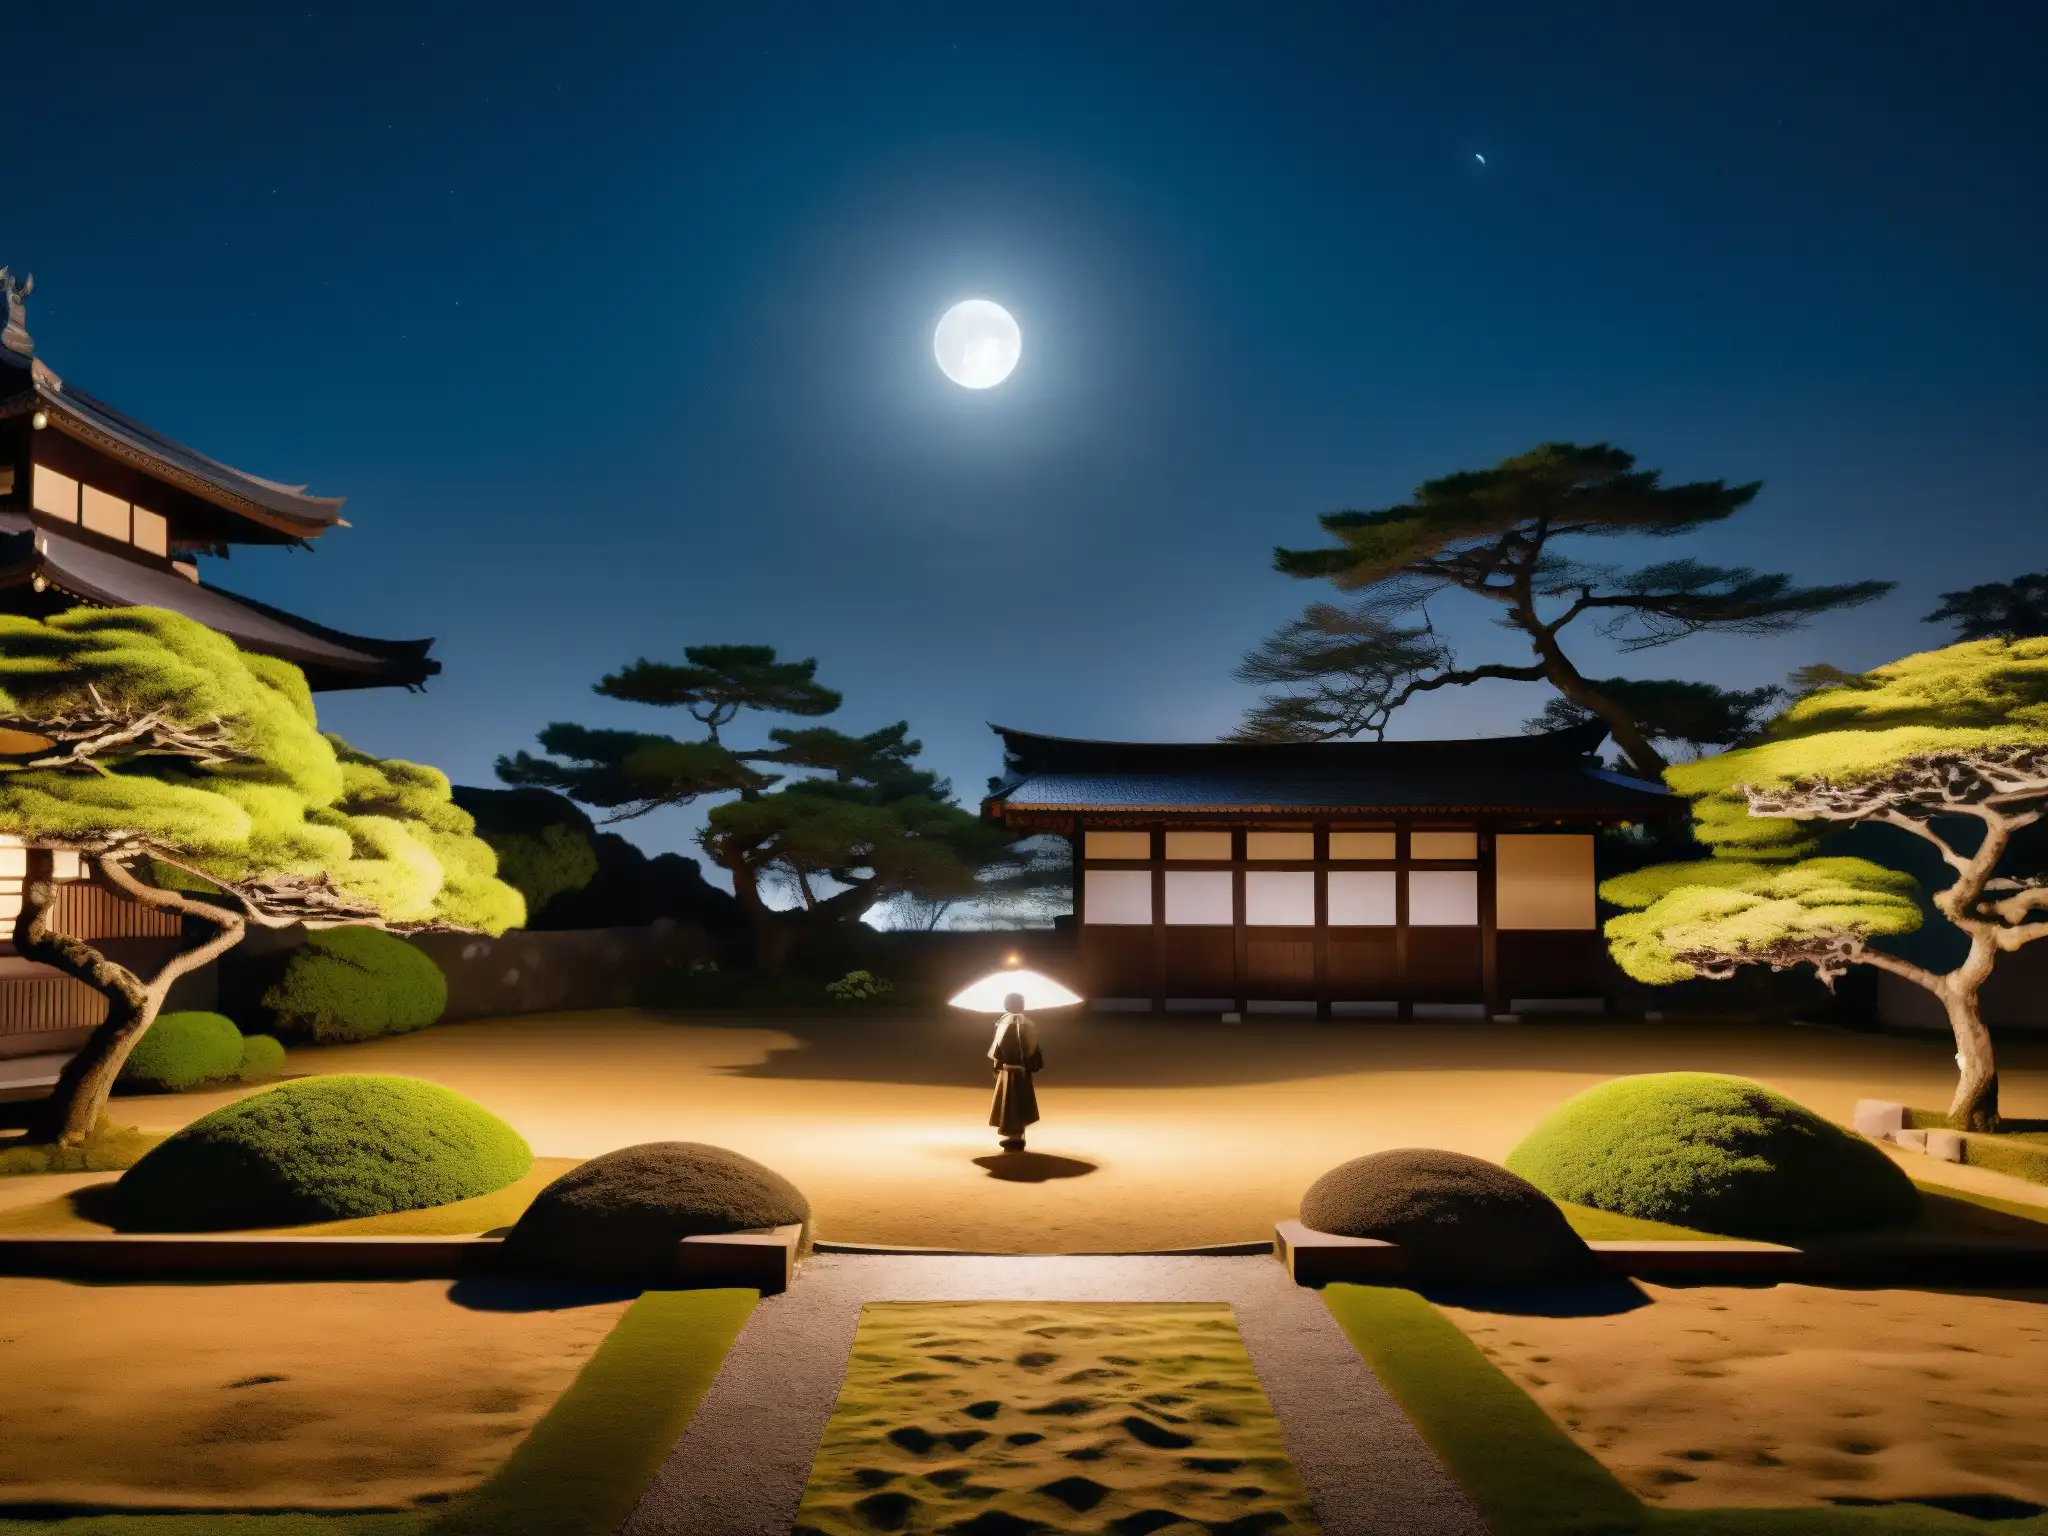 Un jardín japonés tradicional iluminado por la luna, donde un solitario toca el biwa bajo el cielo nocturno